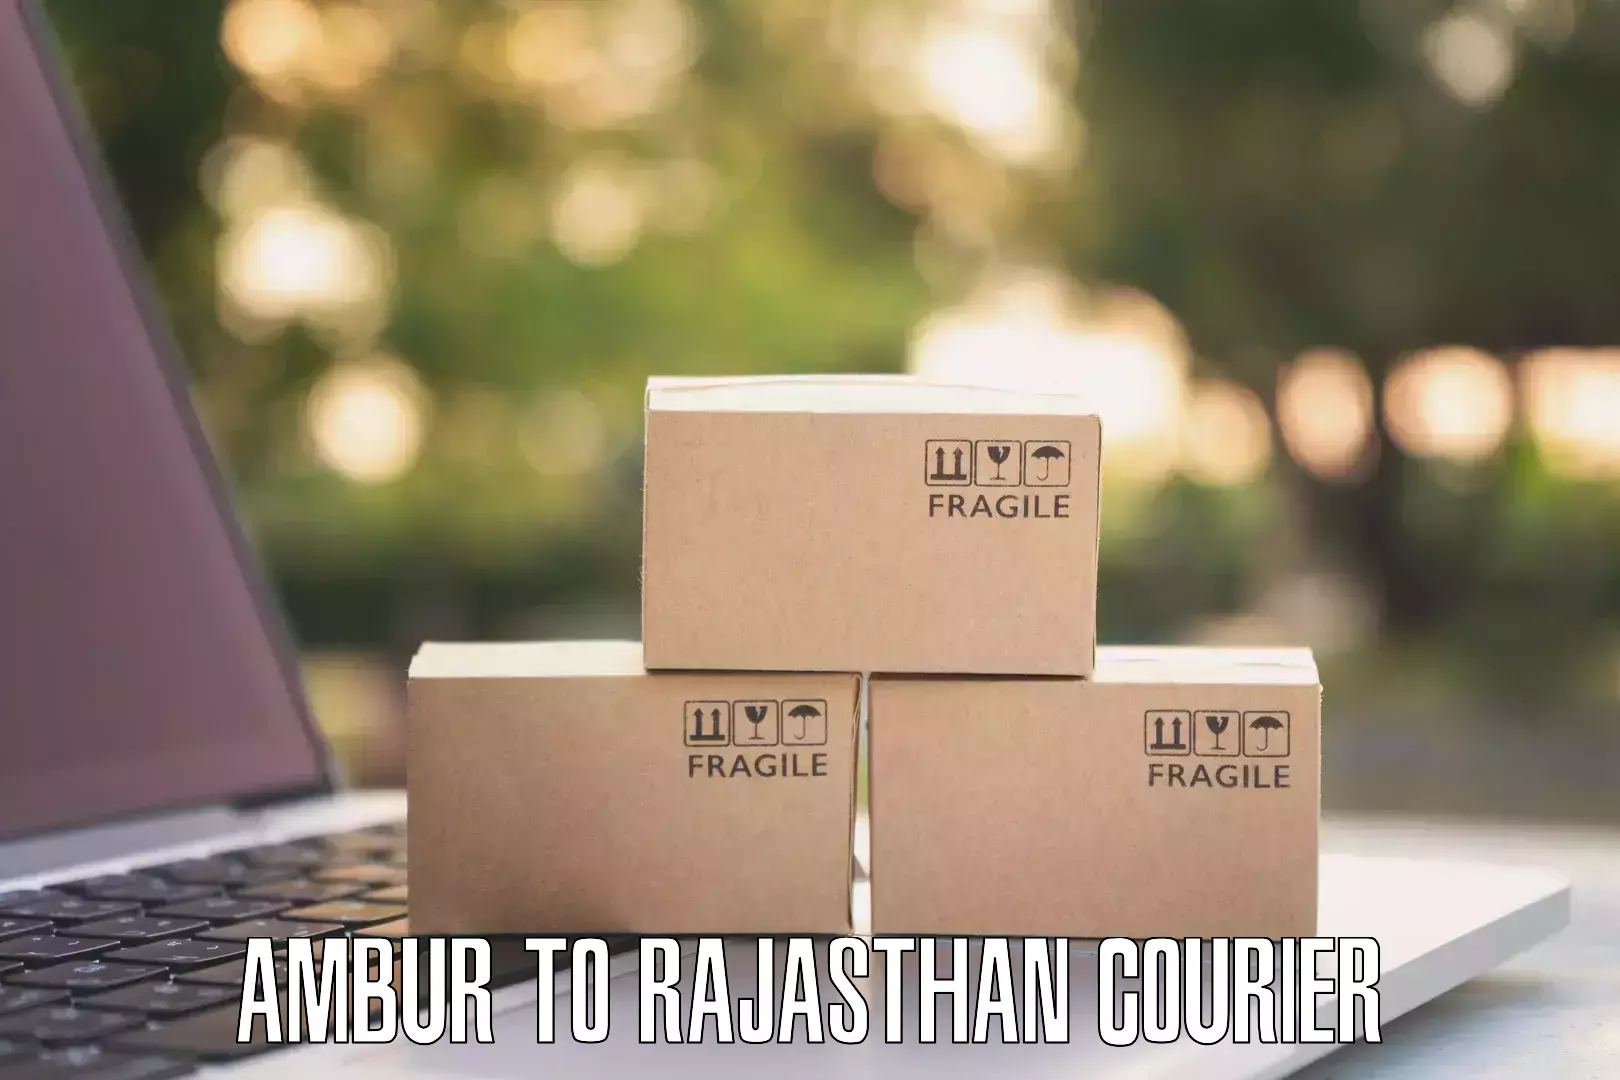 Full-service courier options Ambur to Bansur